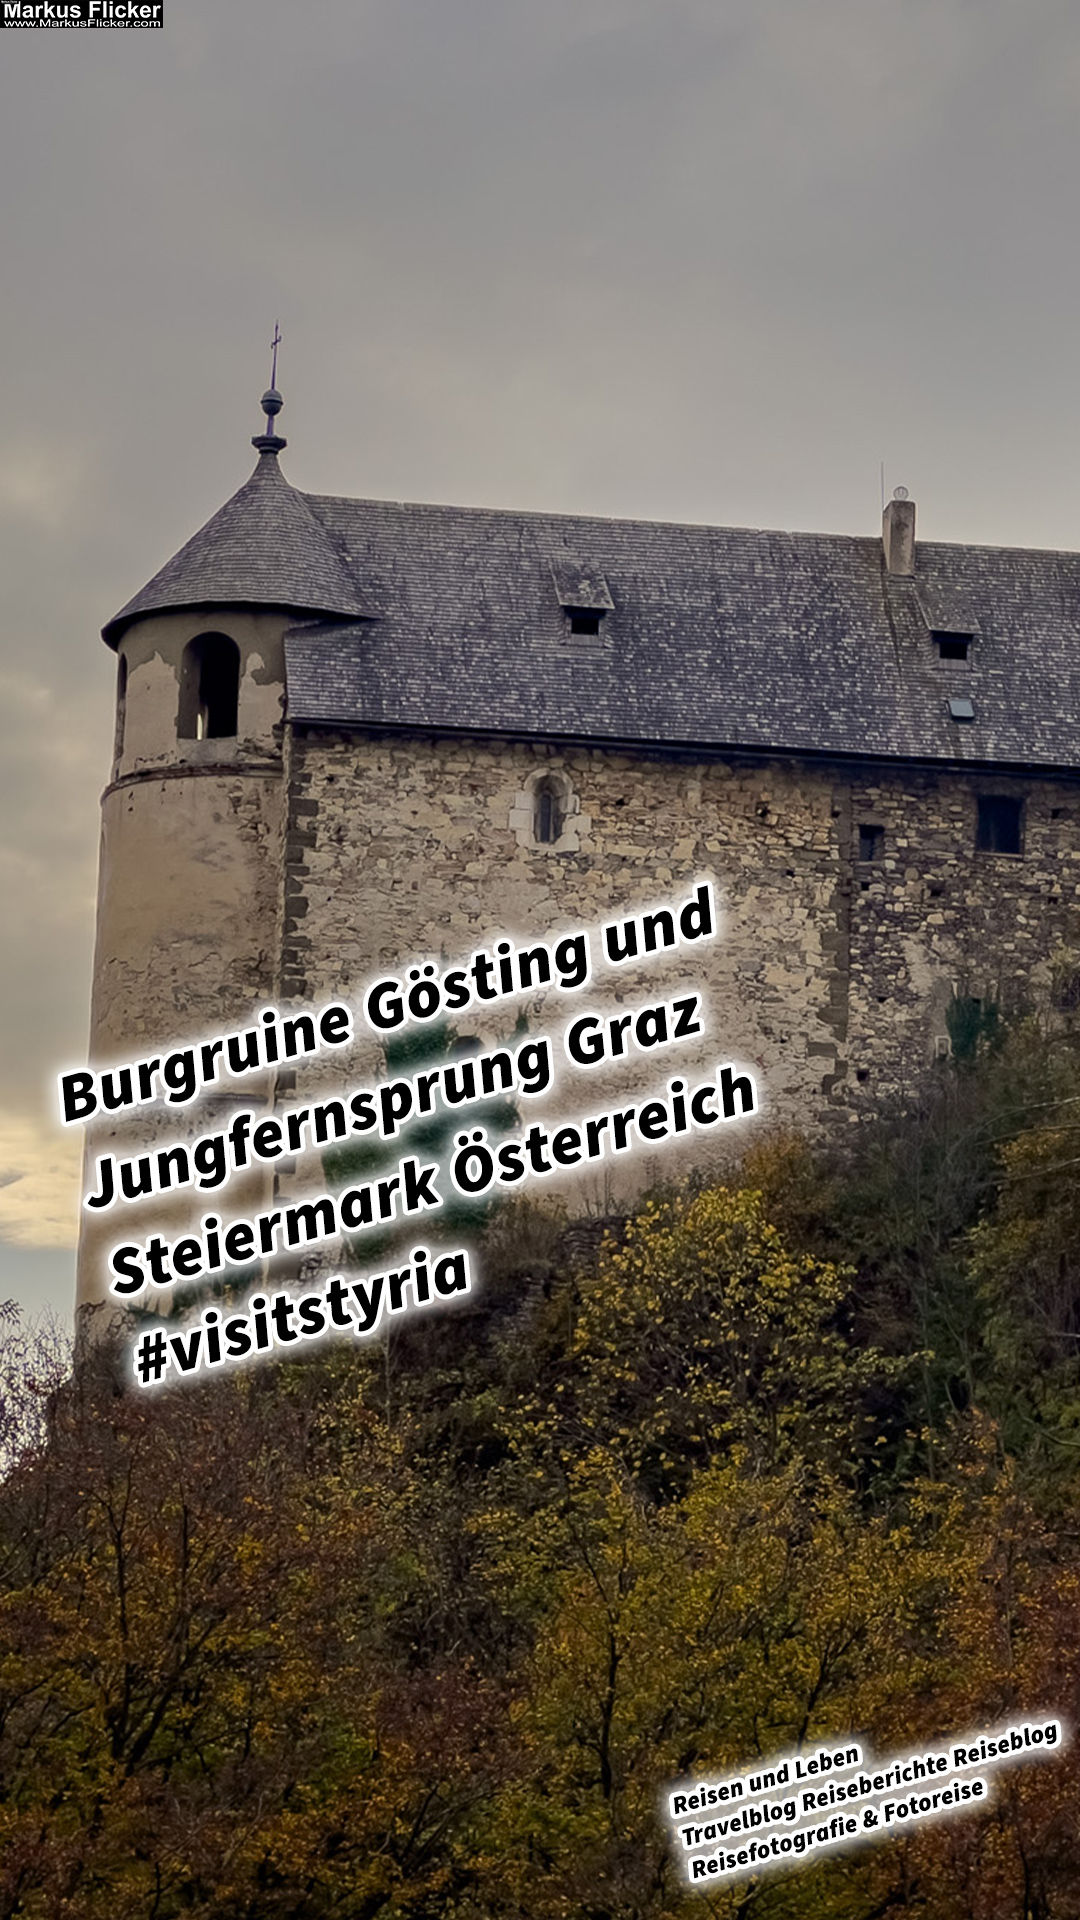 Burgruine Gösting und Jungfernsprung Graz Steiermark Österreich #visitstyria